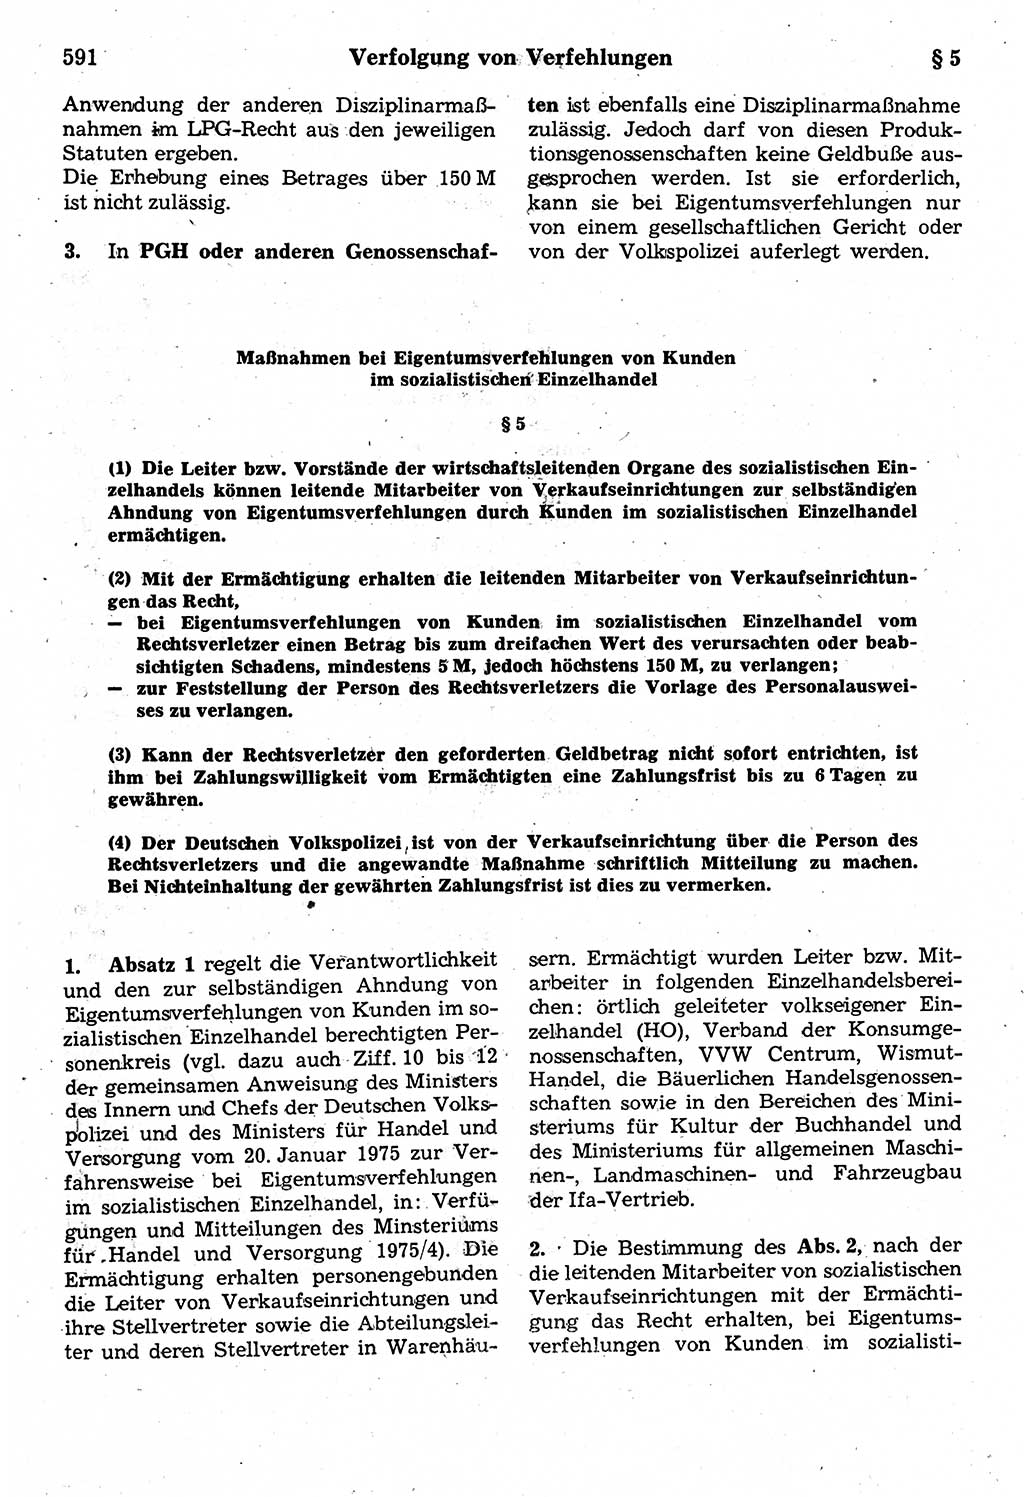 Strafrecht der Deutschen Demokratischen Republik (DDR), Kommentar zum Strafgesetzbuch (StGB) 1987, Seite 591 (Strafr. DDR Komm. StGB 1987, S. 591)